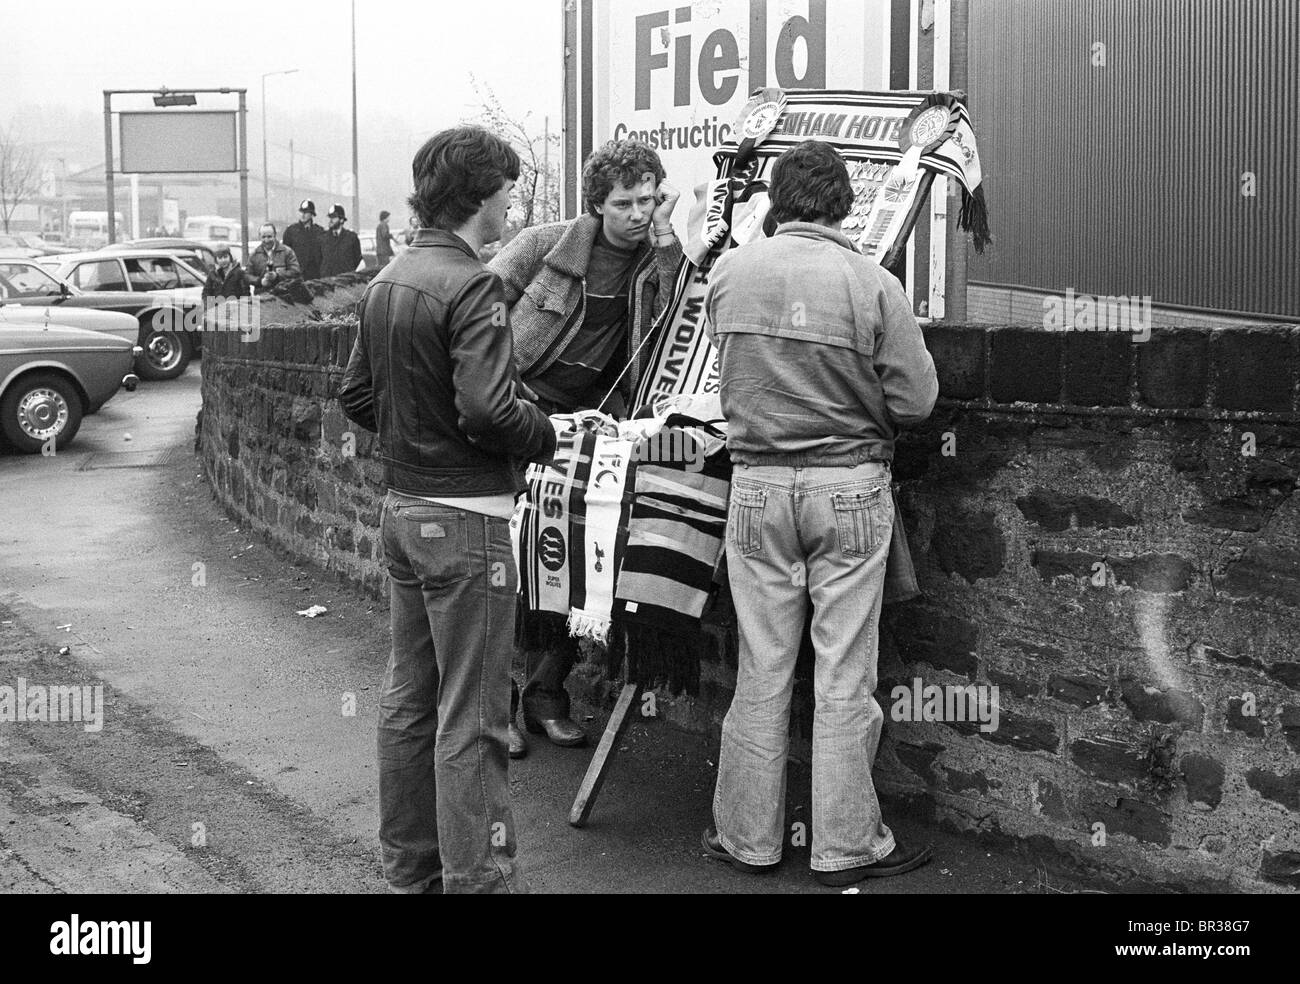 Les supporters de football qui achètent des souvenirs avant la DEMI-FINALE DE la FA CUP STIMULENT les V LOUPS À HILLSBROUGH 1981. Photo de DAVID BAGNALL Banque D'Images